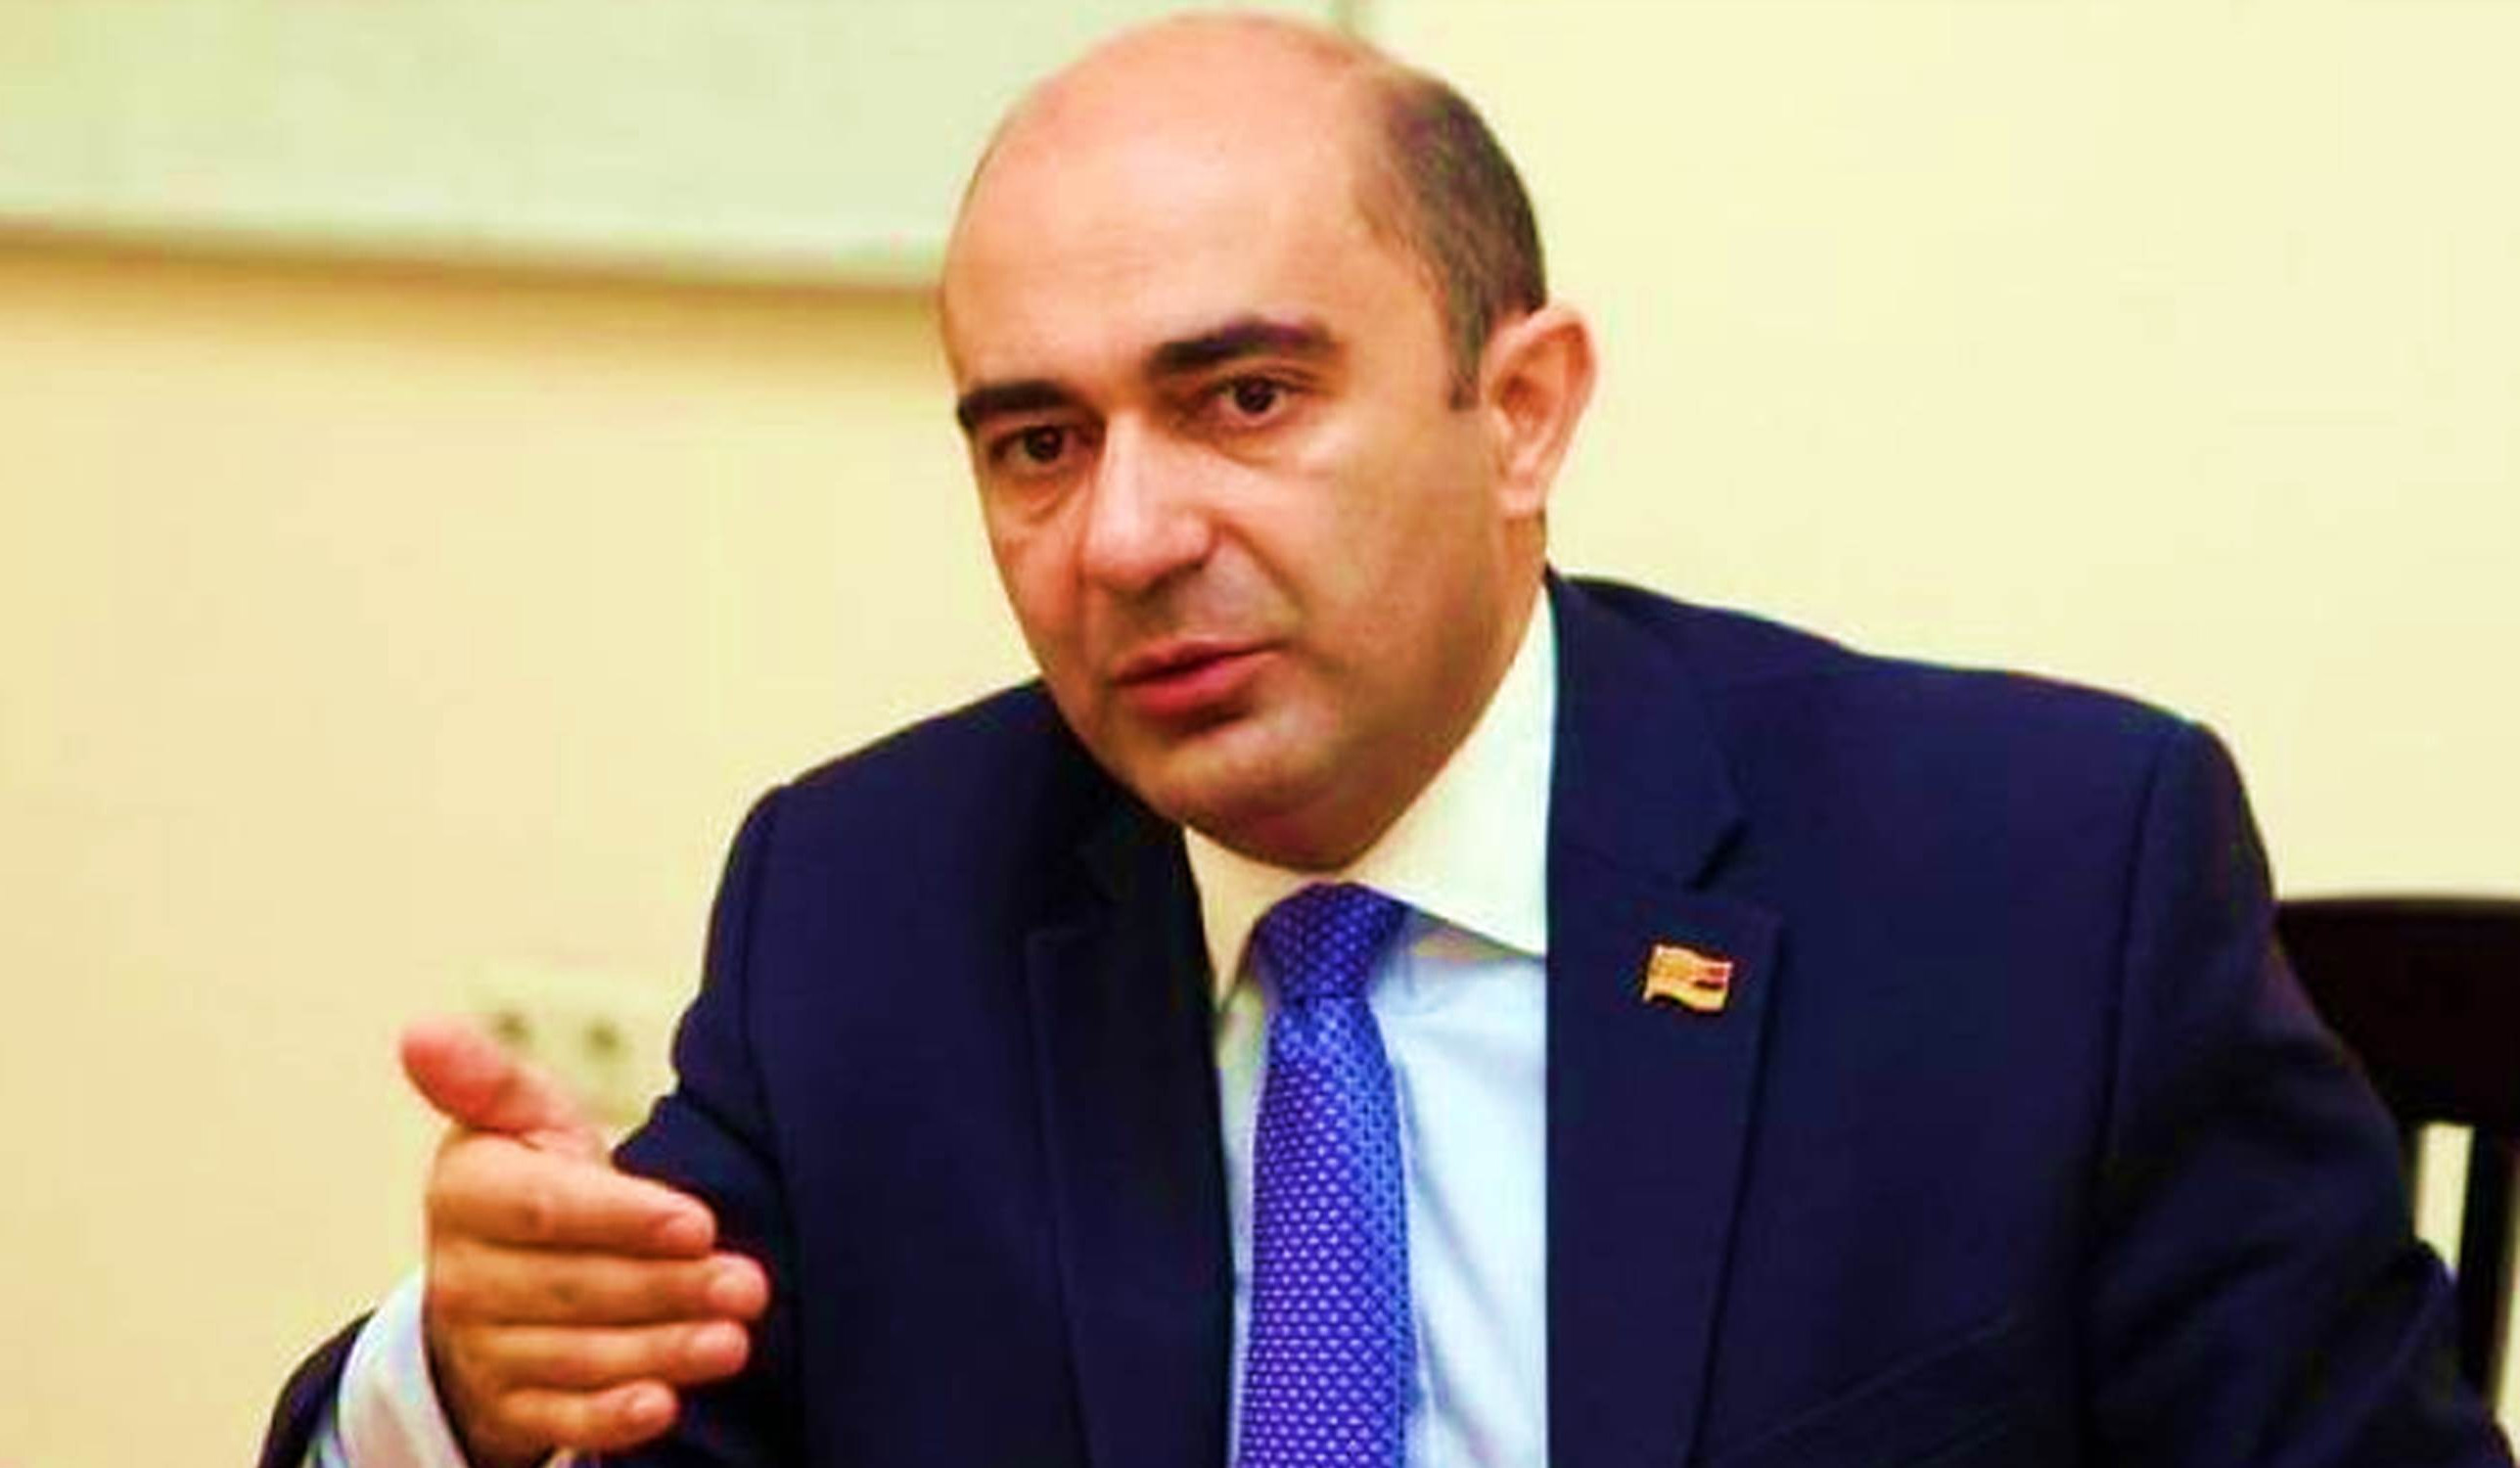 Азербайджан вновь открыл огонь по мирной и демократической Армении - Марукян